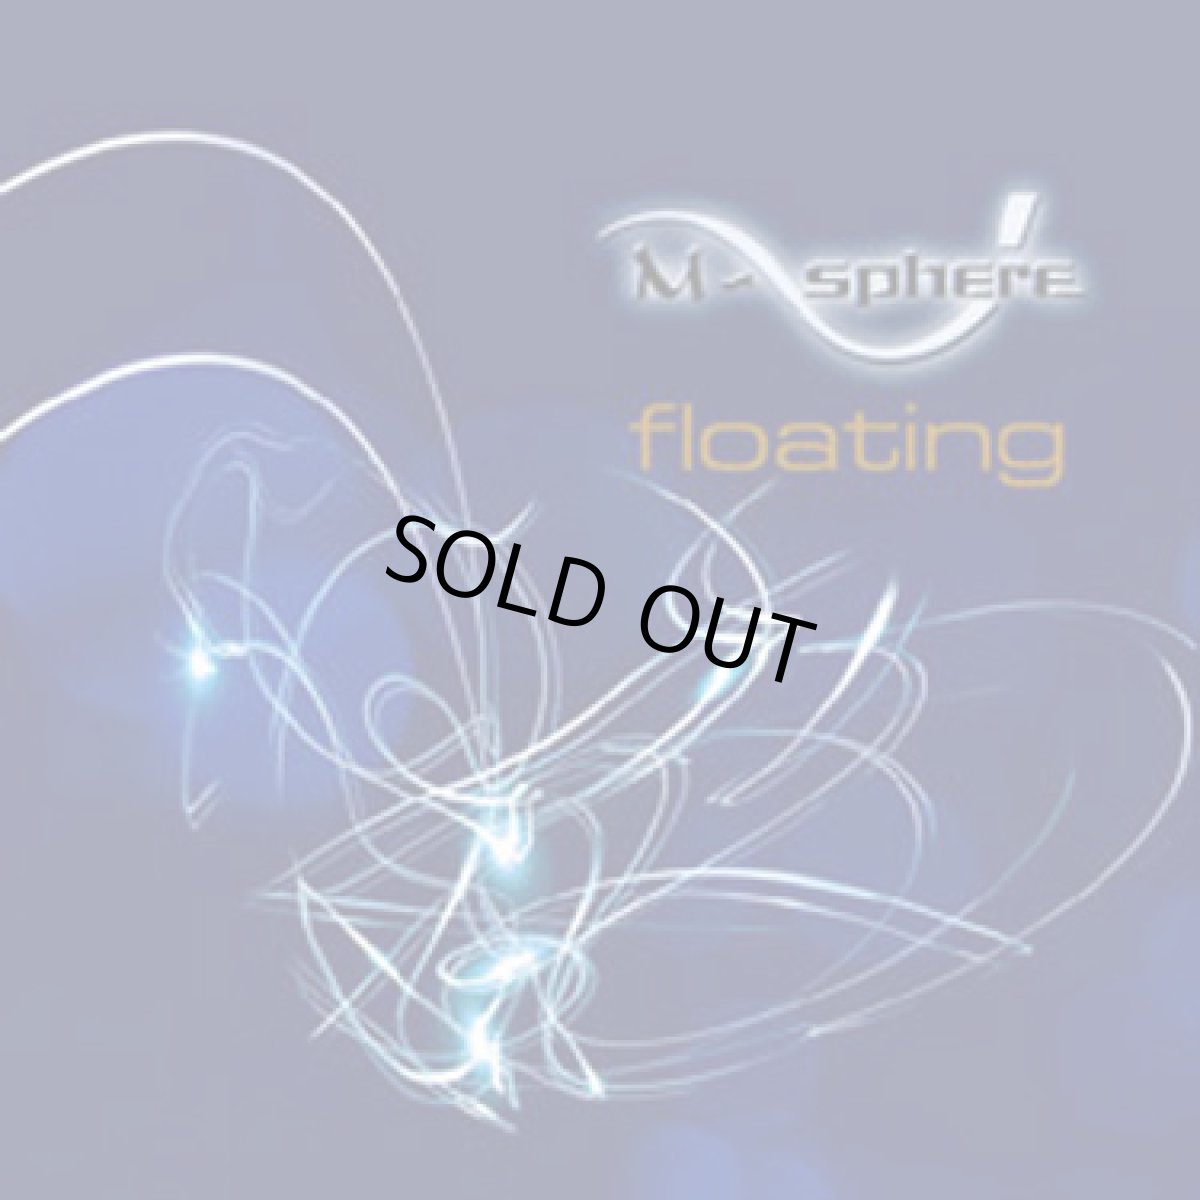 画像1: CD「M-Sphere/Floating」 (1)